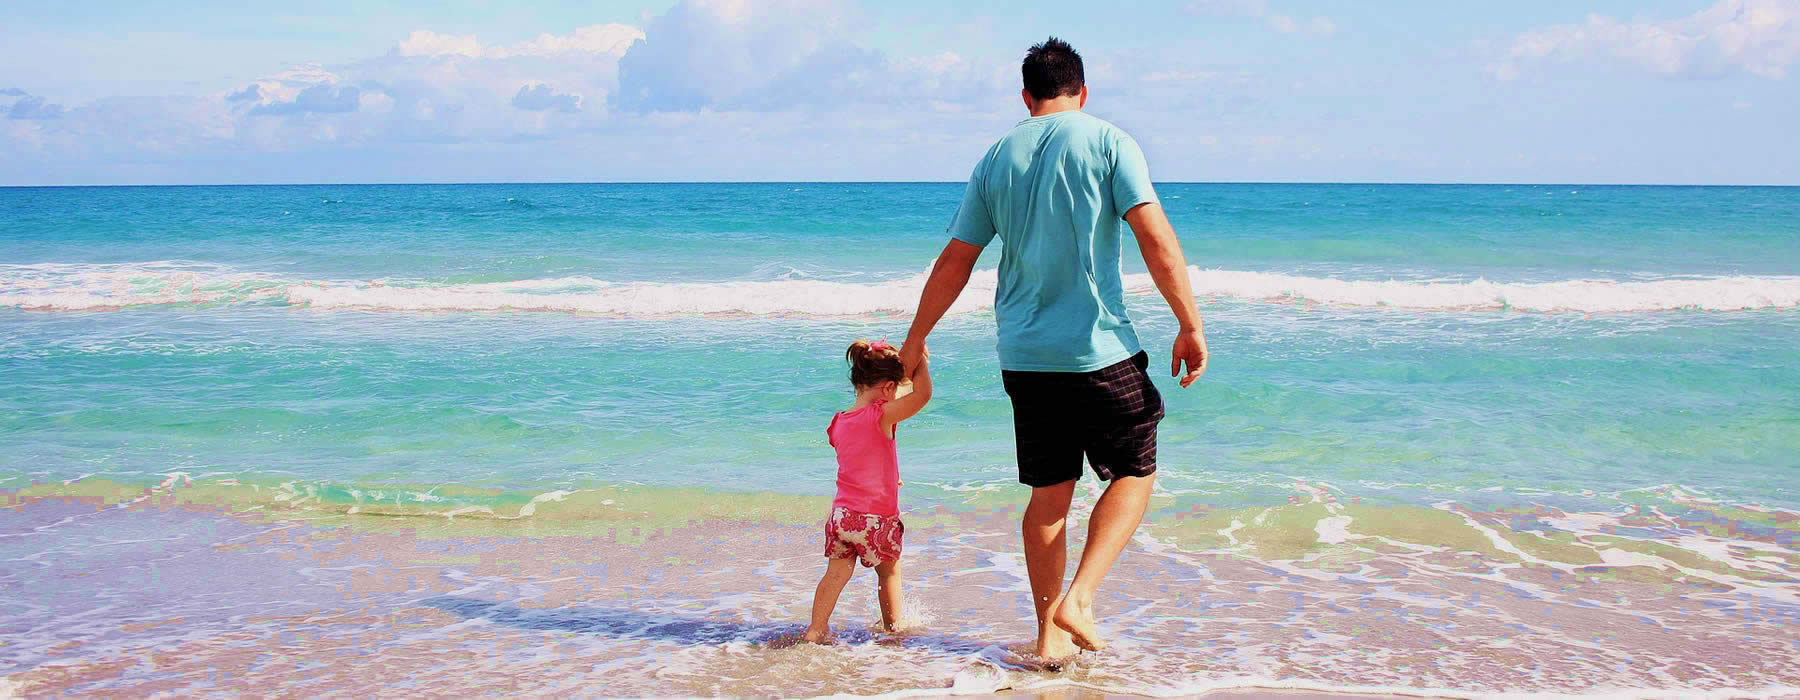 imagen de padre caminando con su hija pequeña en la playa tranquilos por tener un seguro de vida